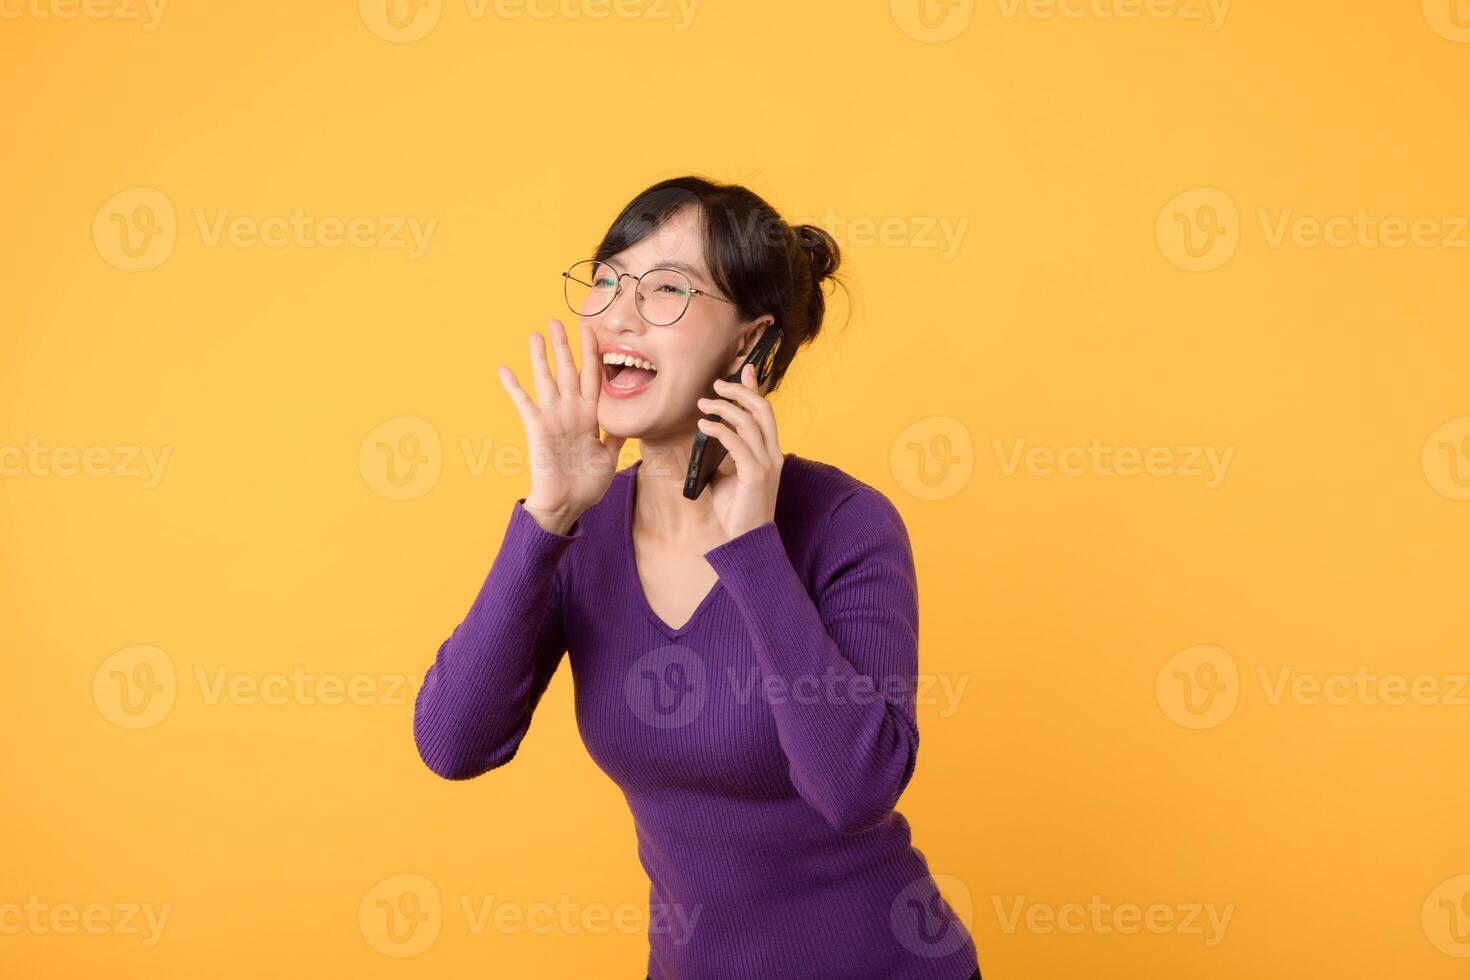 ansluta, affär, och lyckas uppkopplad med glad lady, bär en lila skjorta och glasögon, och henne smartphone. omfamning de skönhet av digital kommunikation mot en gul bakgrund foto